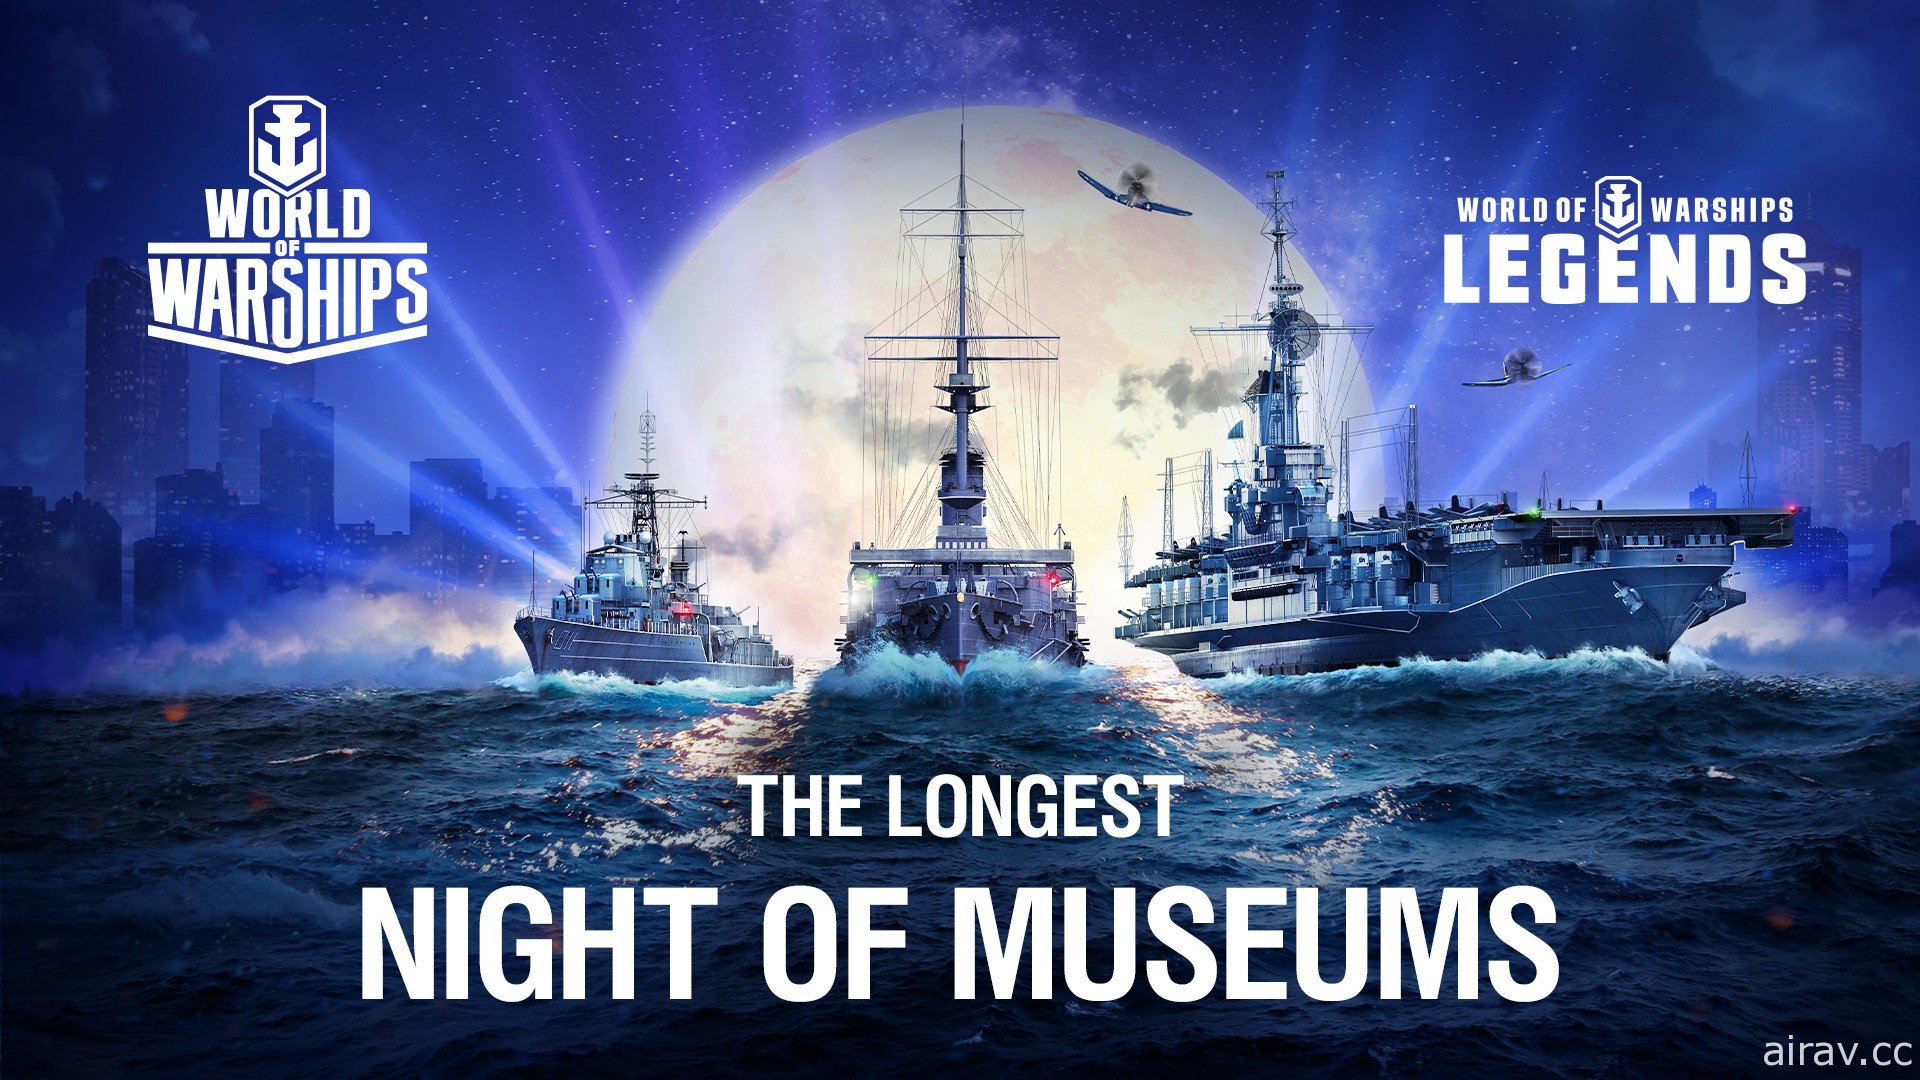 慶祝國際博物館日 《戰艦世界》5 月 18 日舉行「最長的博物館之夜」線上實況節目